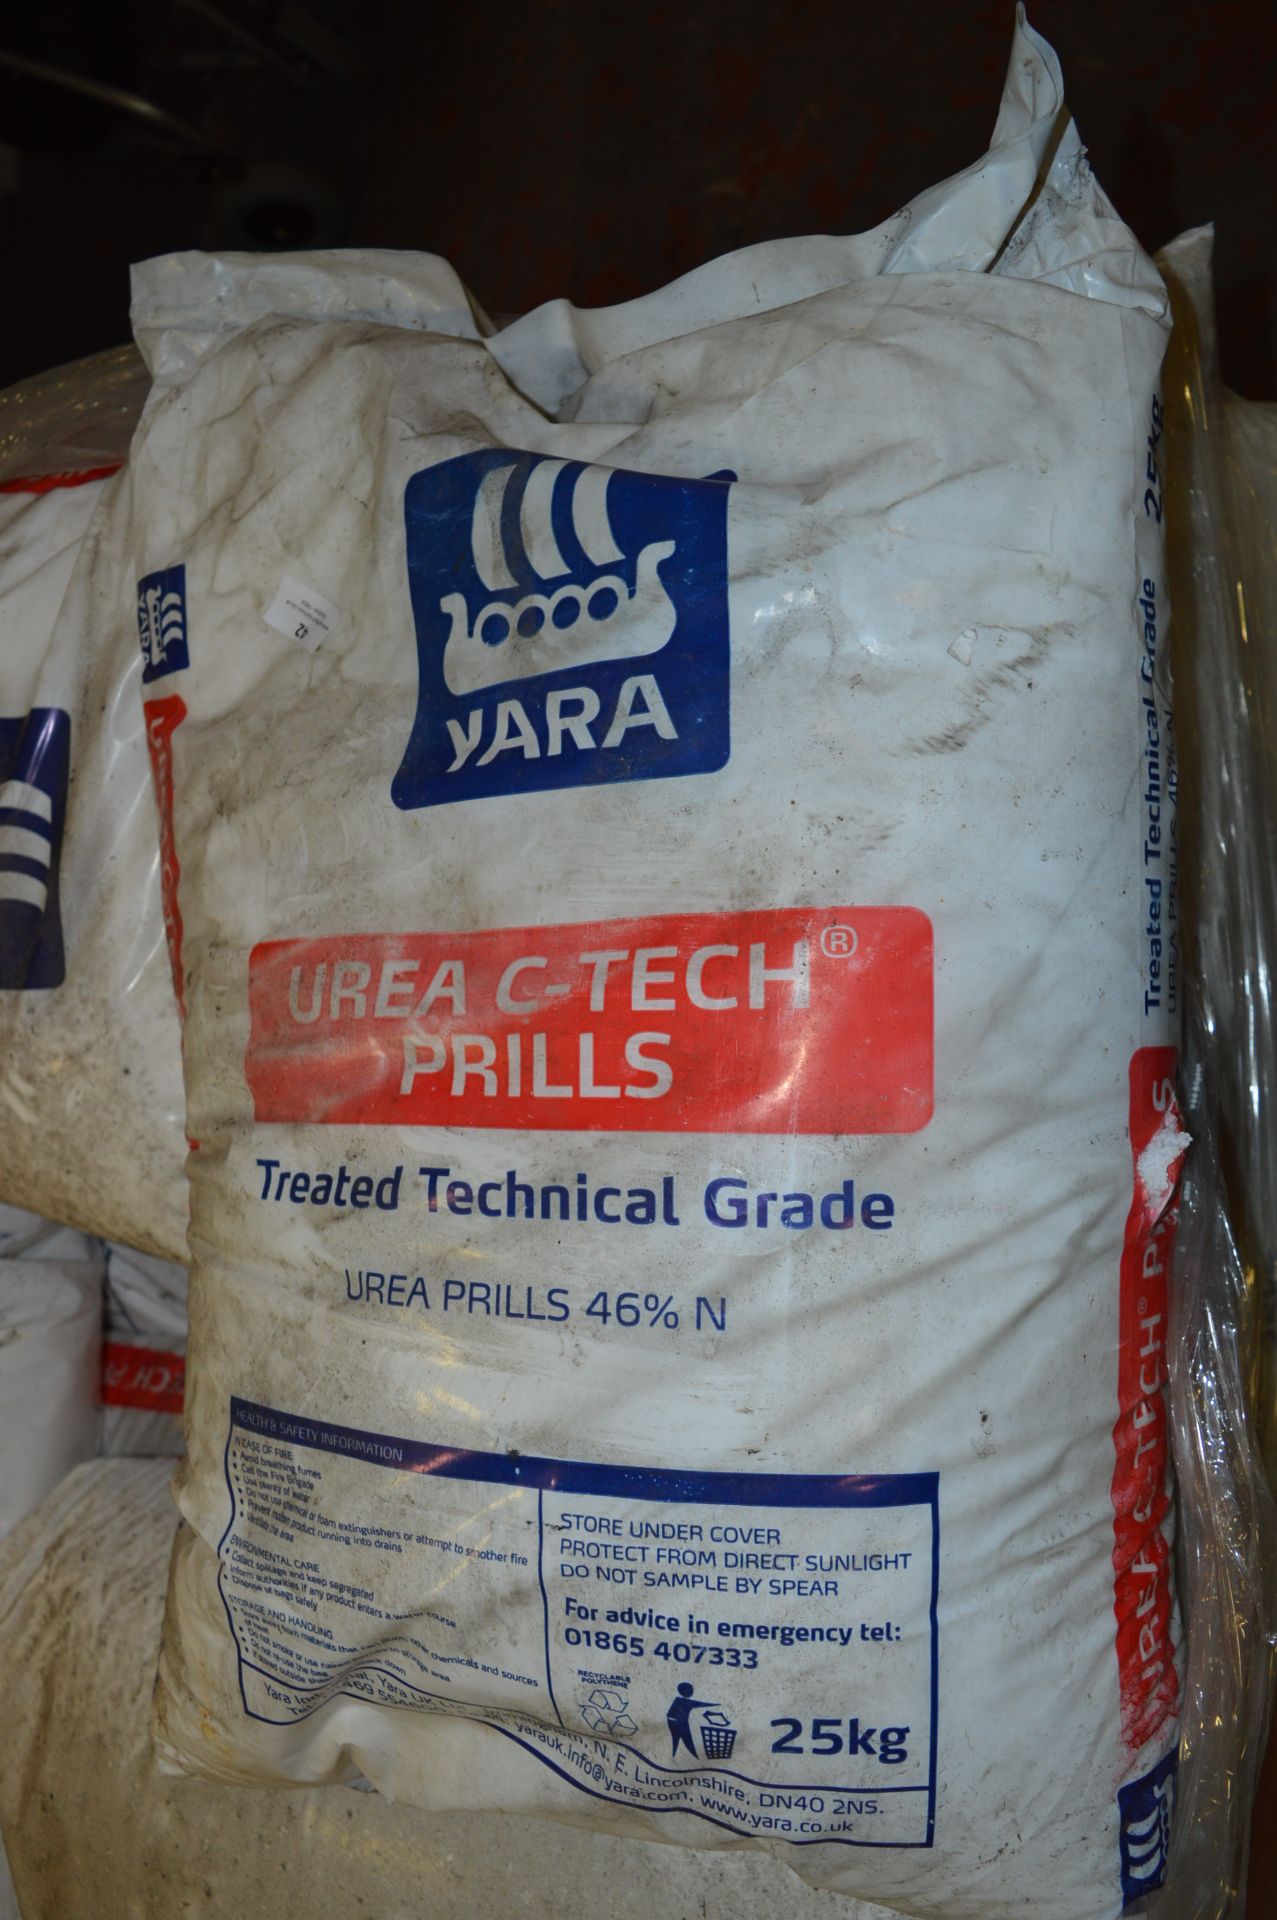 *24x 25kg Bags of Yara Urea C-Tech Prills - Image 2 of 2